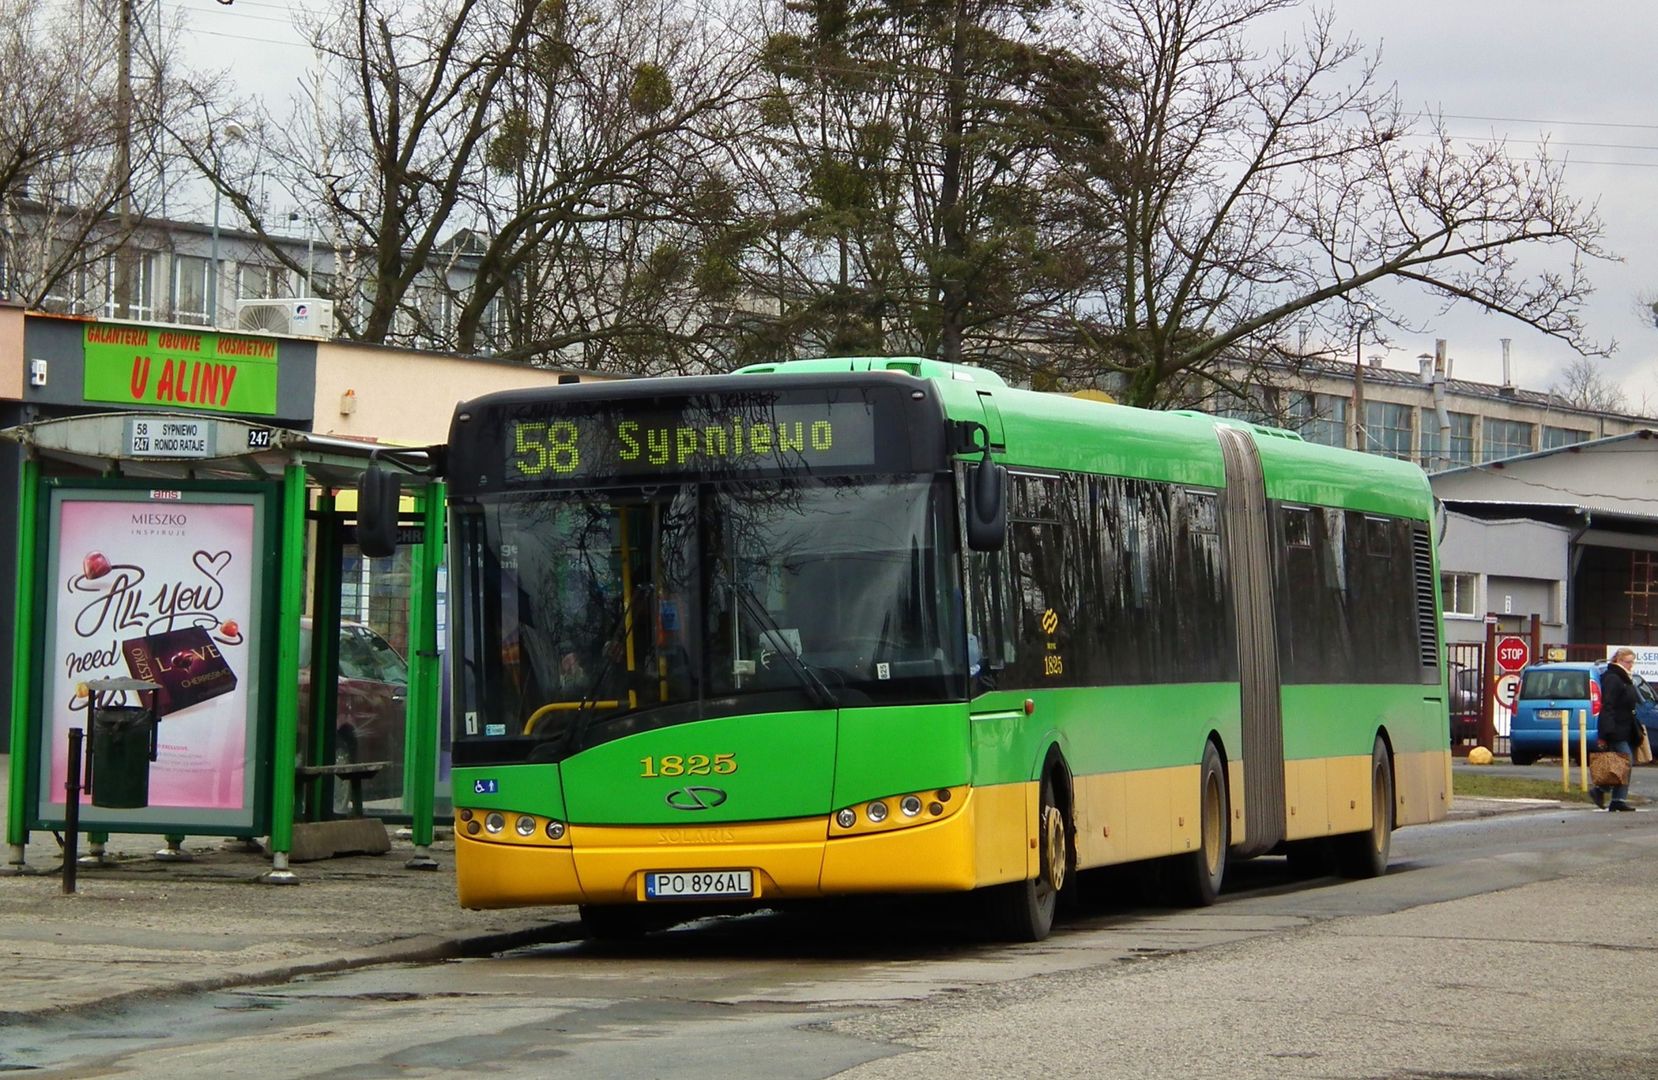 Skandal w poznańskim autobusie. Ciężko uwierzyć w to, co się tam wydarzyło